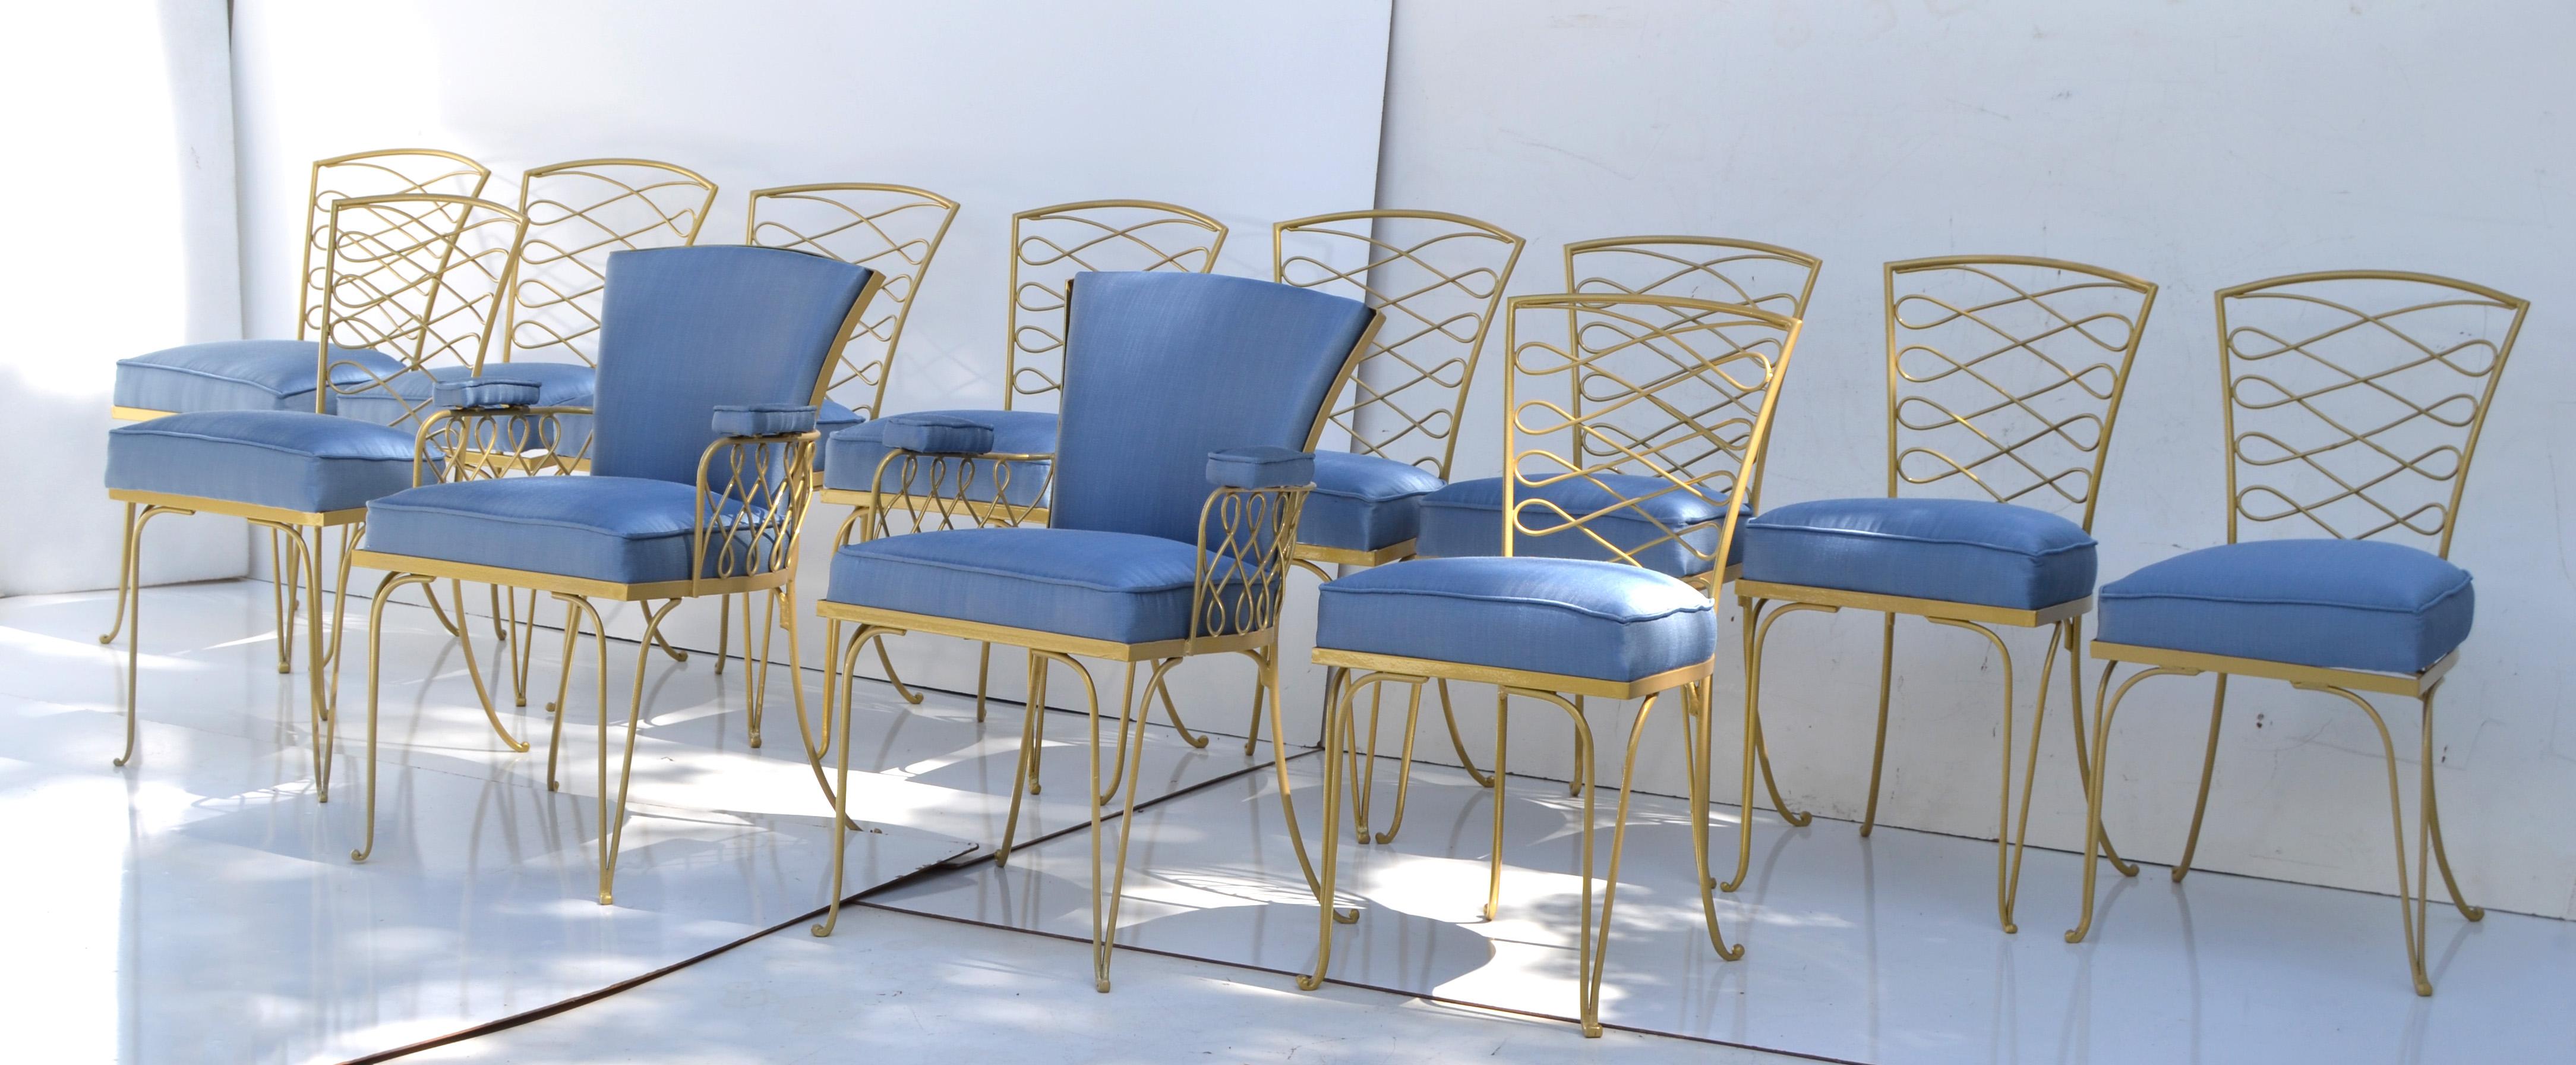 Hervorragendes Set von vierzehn Art Deco-Esszimmerstühlen aus Schmiedeeisen von René Prou im Stil der 1940er Jahre.
Das Set besteht aus 12 Beistellstühlen und 2 Sesseln aus goldfarben pulverbeschichtetem Schmiedeeisen mit kornblumenblauem